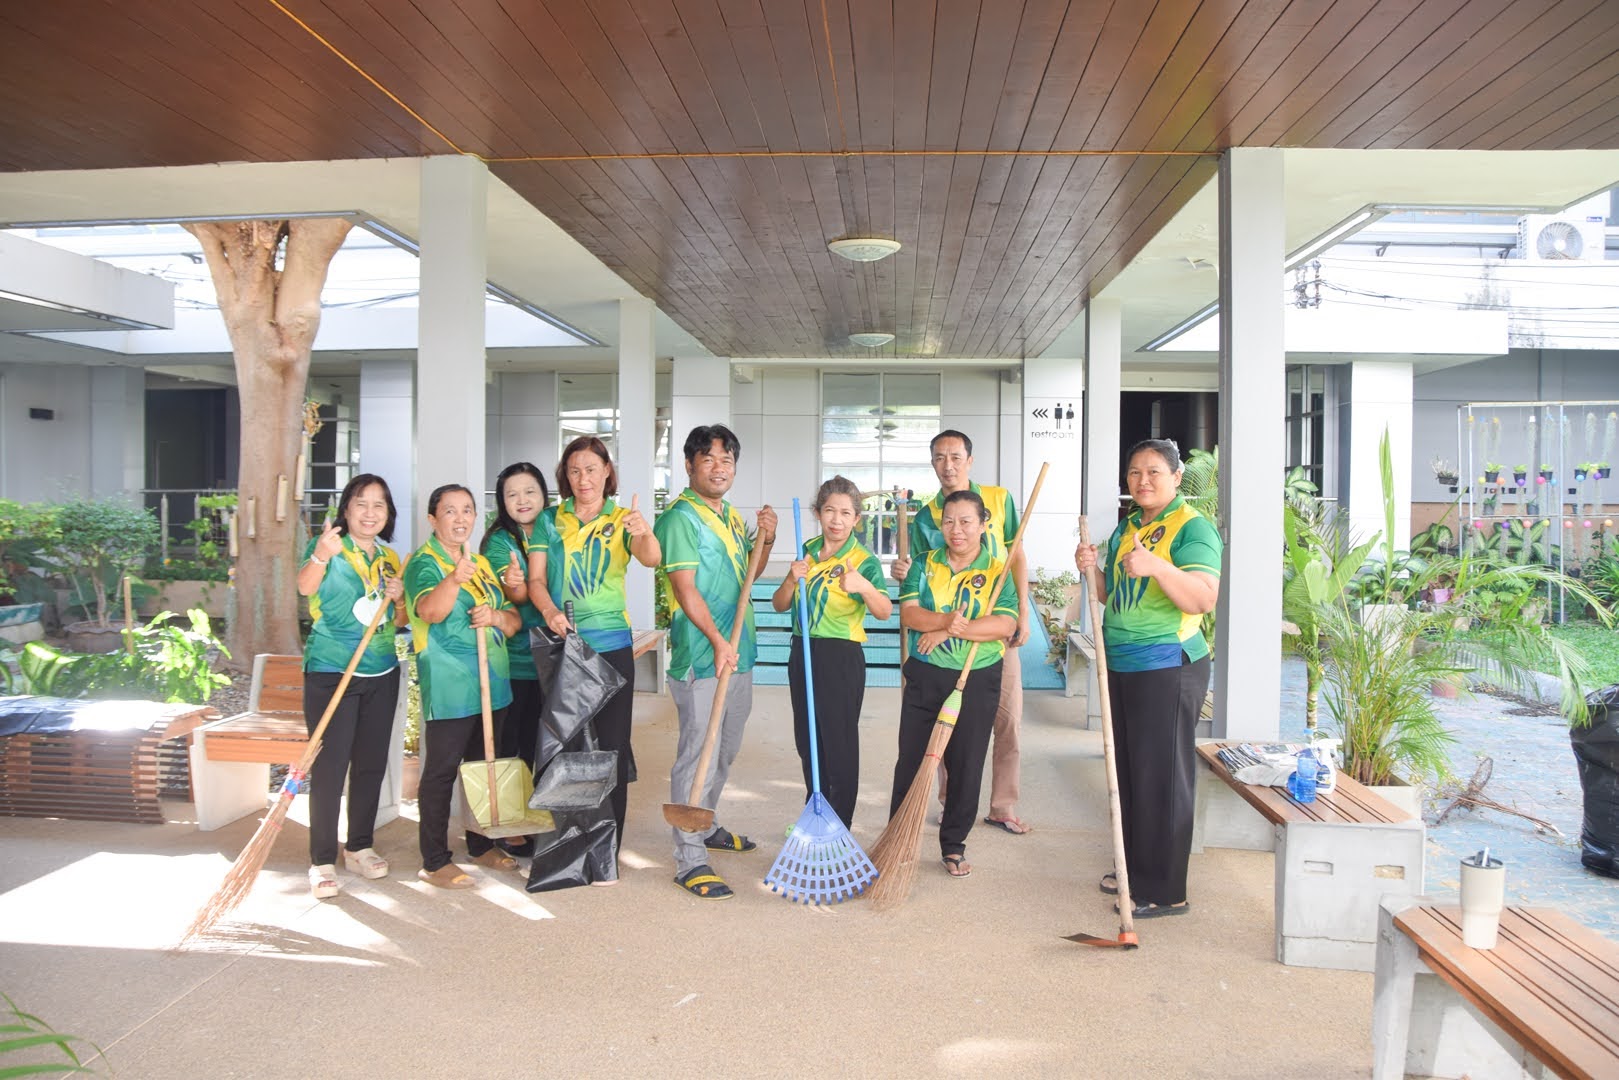 ผู้บริหารและบุคลากร สำนักวิทยบริการและเทคโนโลยีสารสนเทศ มหาวิทยาลัยราชภัฏเพชรบุรี ดำเนินกิจกรรม Big Cleaning Day